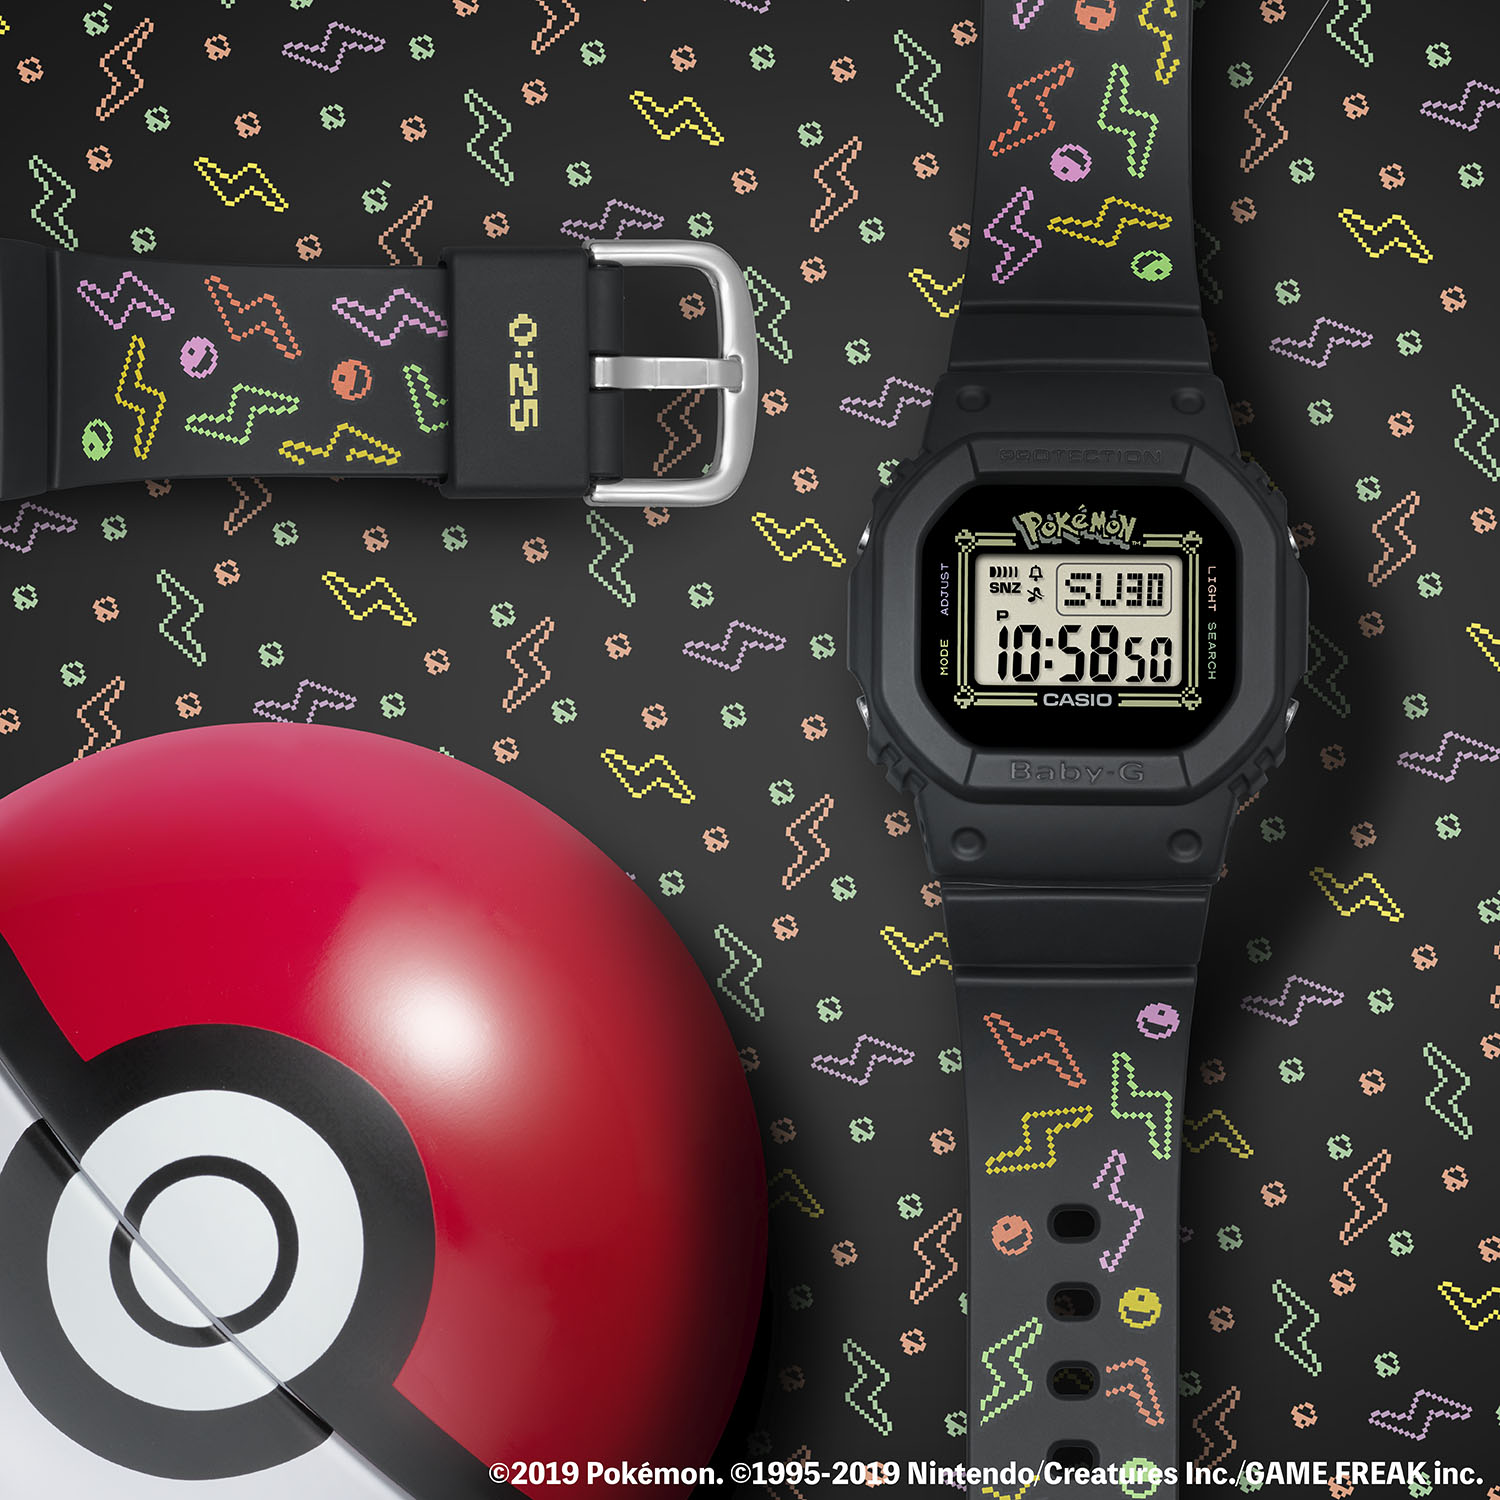 Pokémon x BABY-G Pikachu Watch Release Date